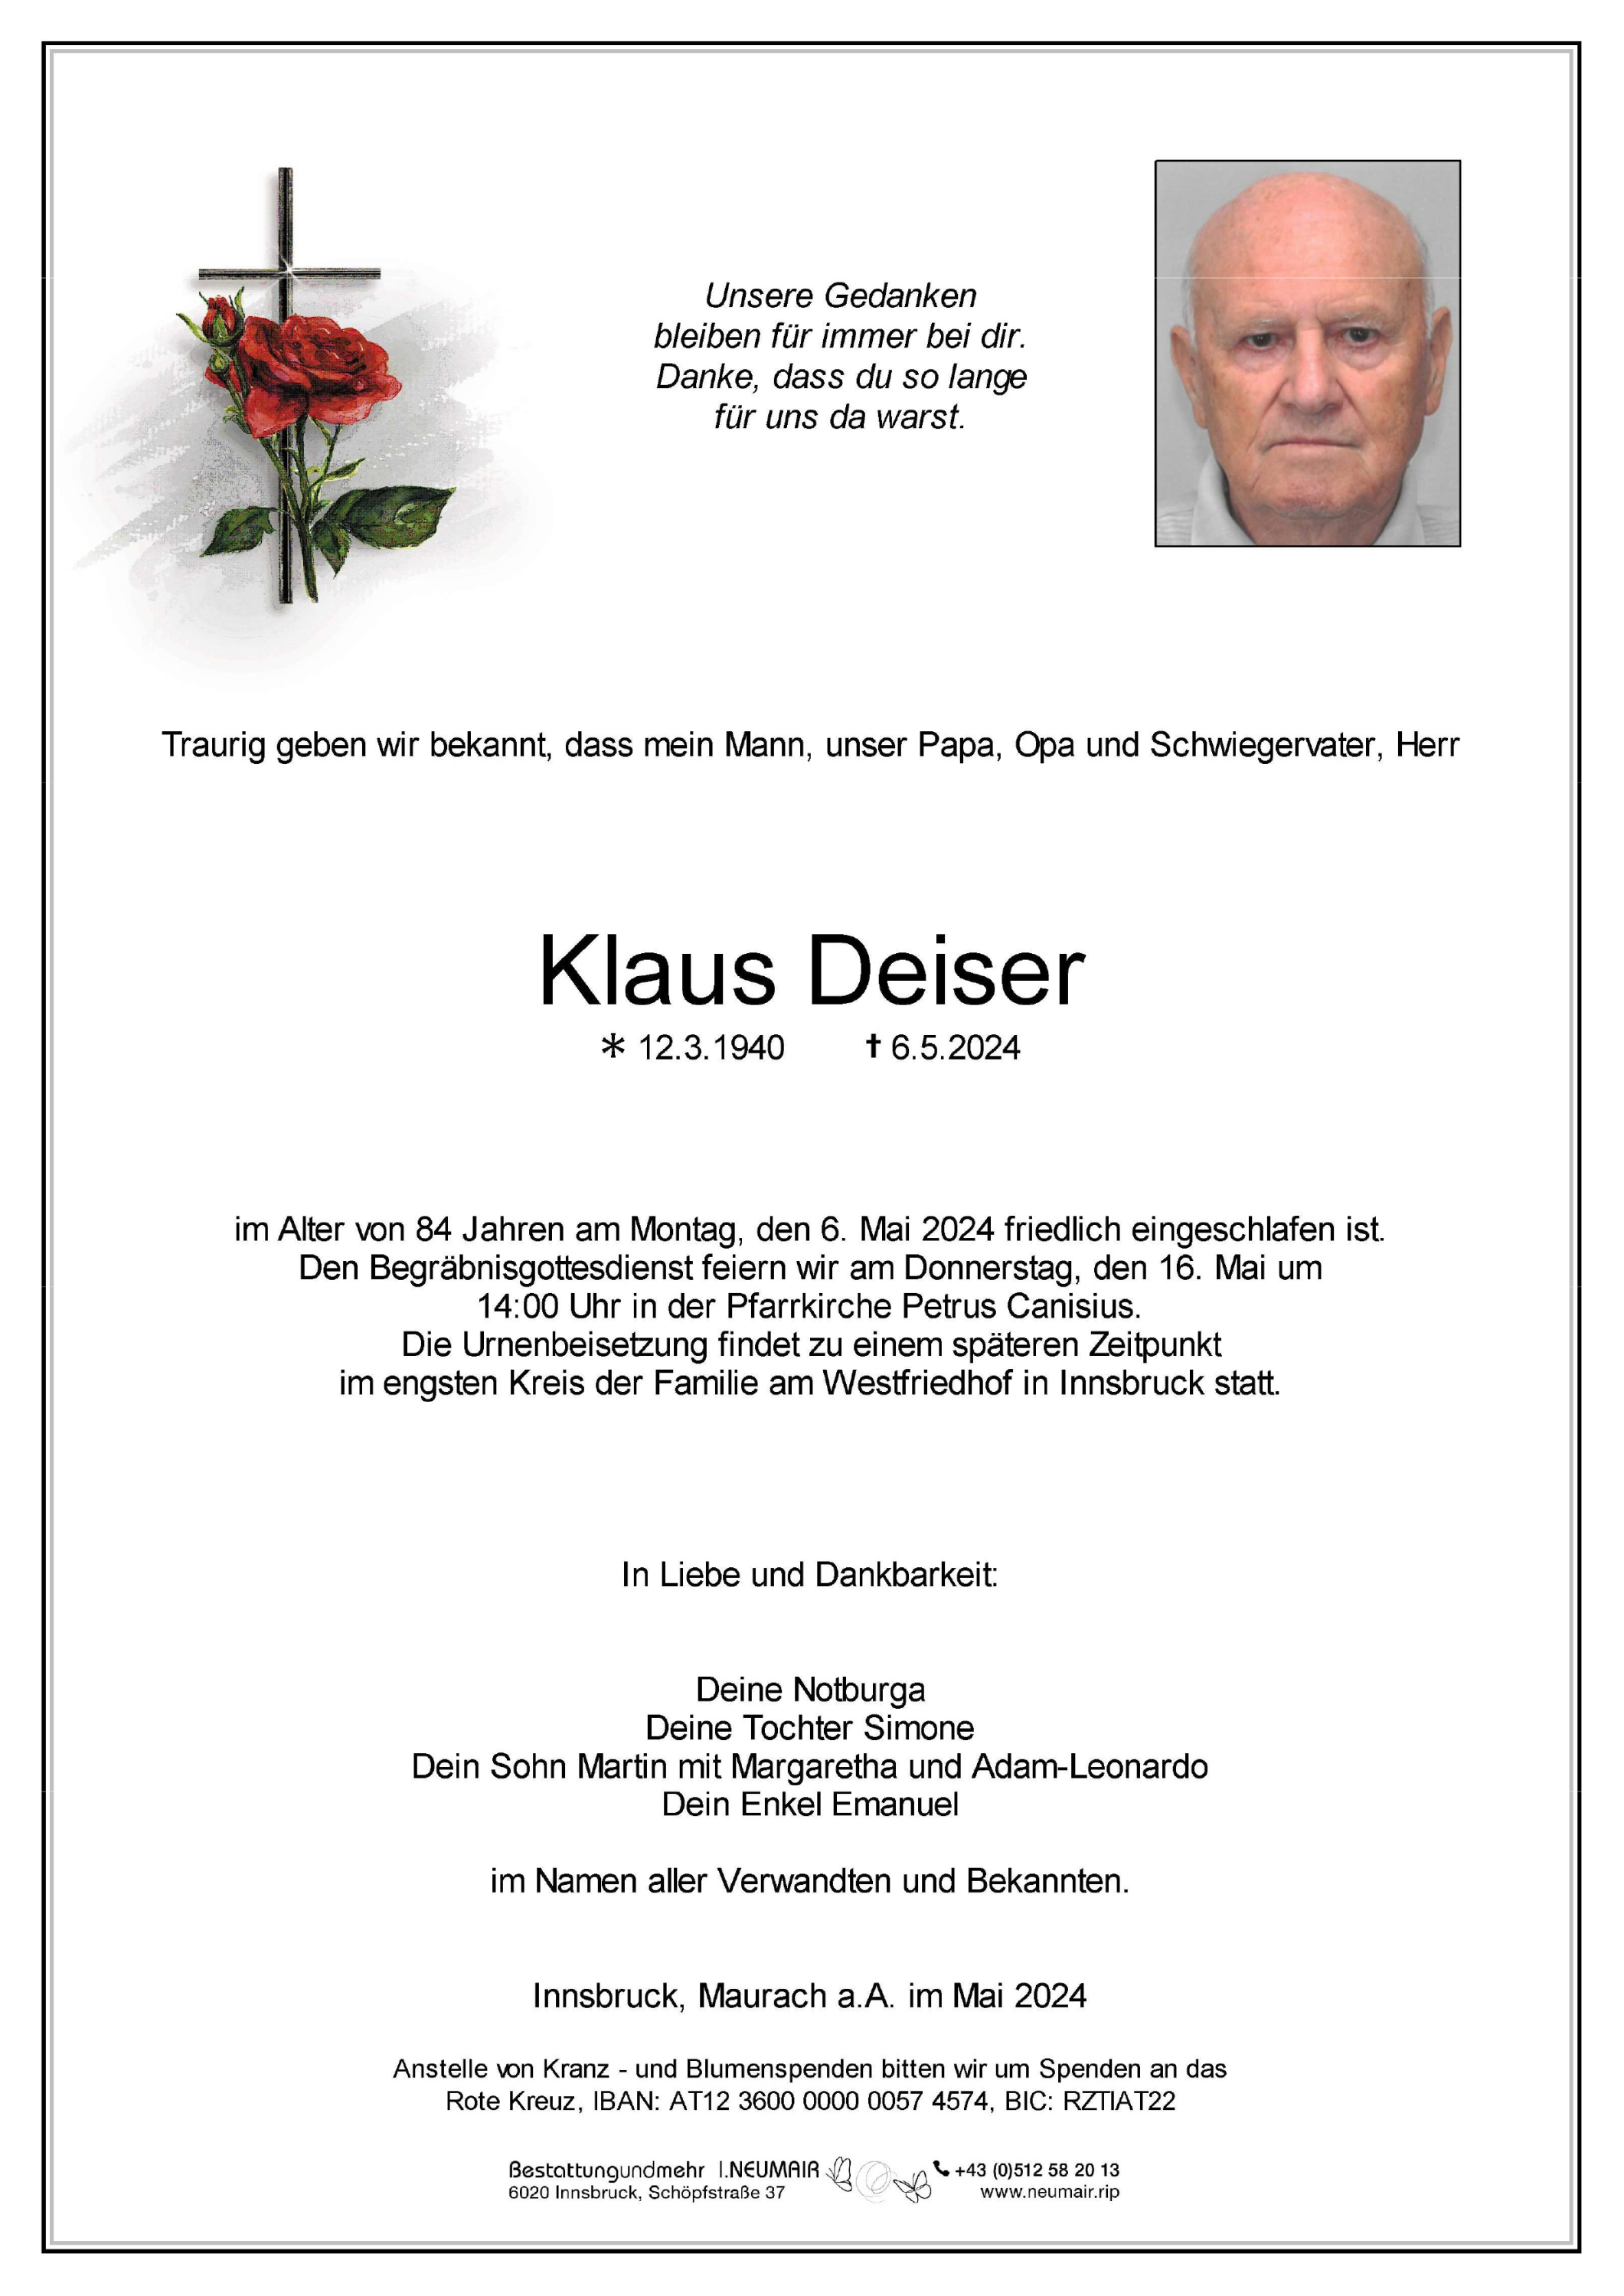 Klaus Deiser